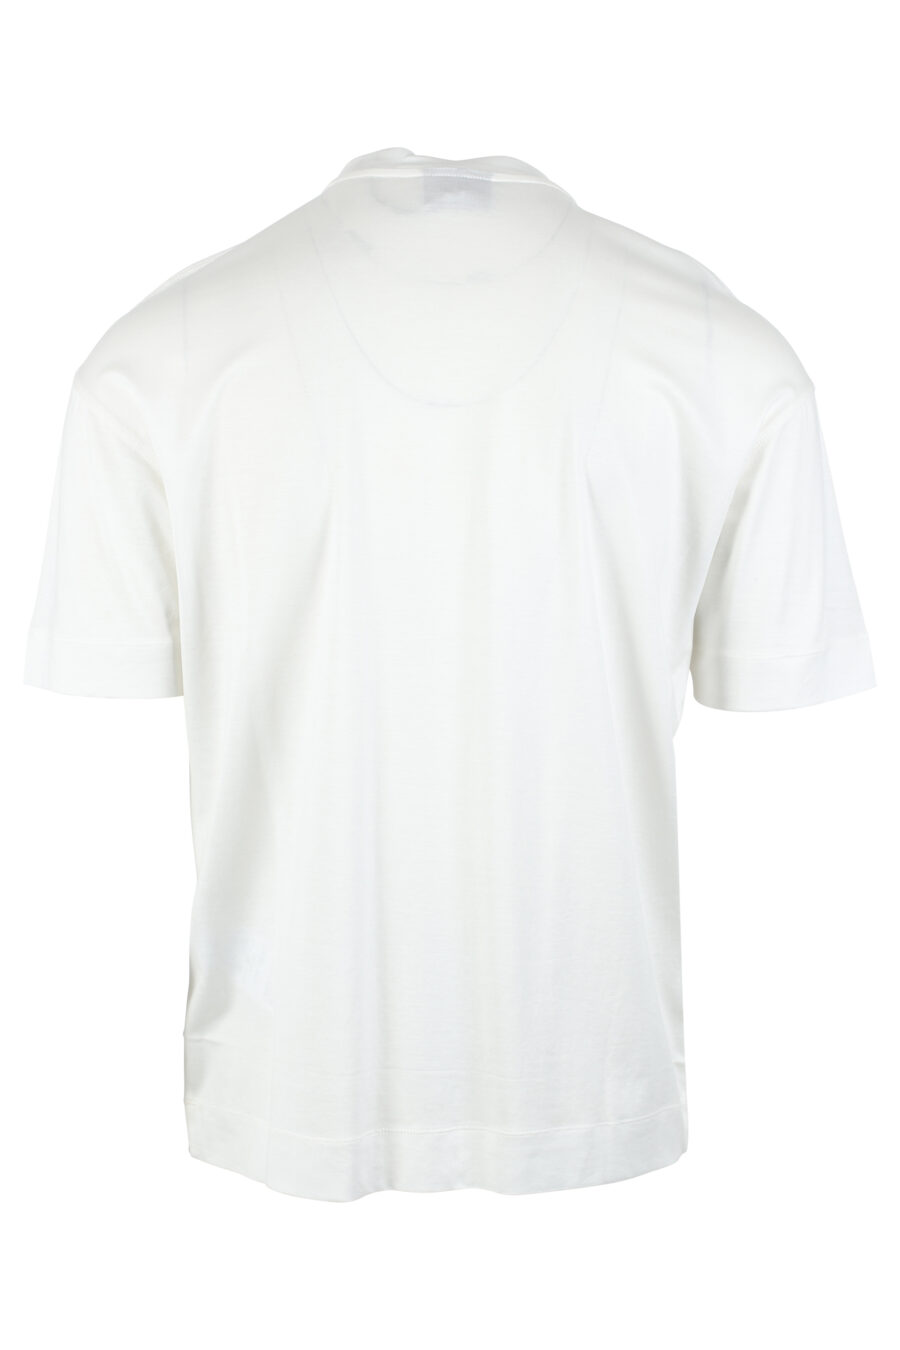 Camiseta blanca con logo monocromático centrado - IMG 4781